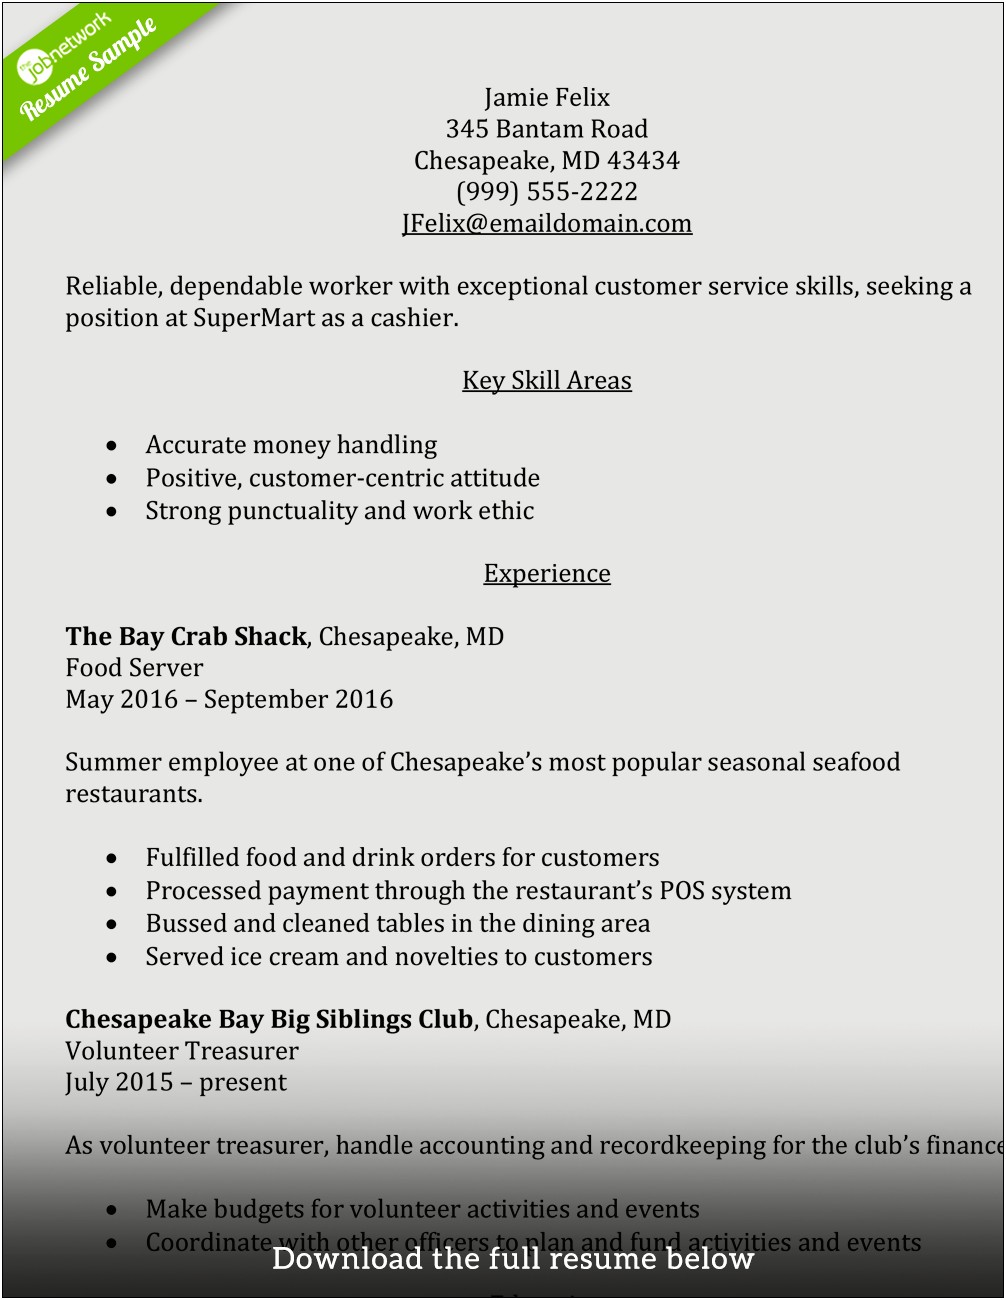 Skills Cashier Job Description Resume